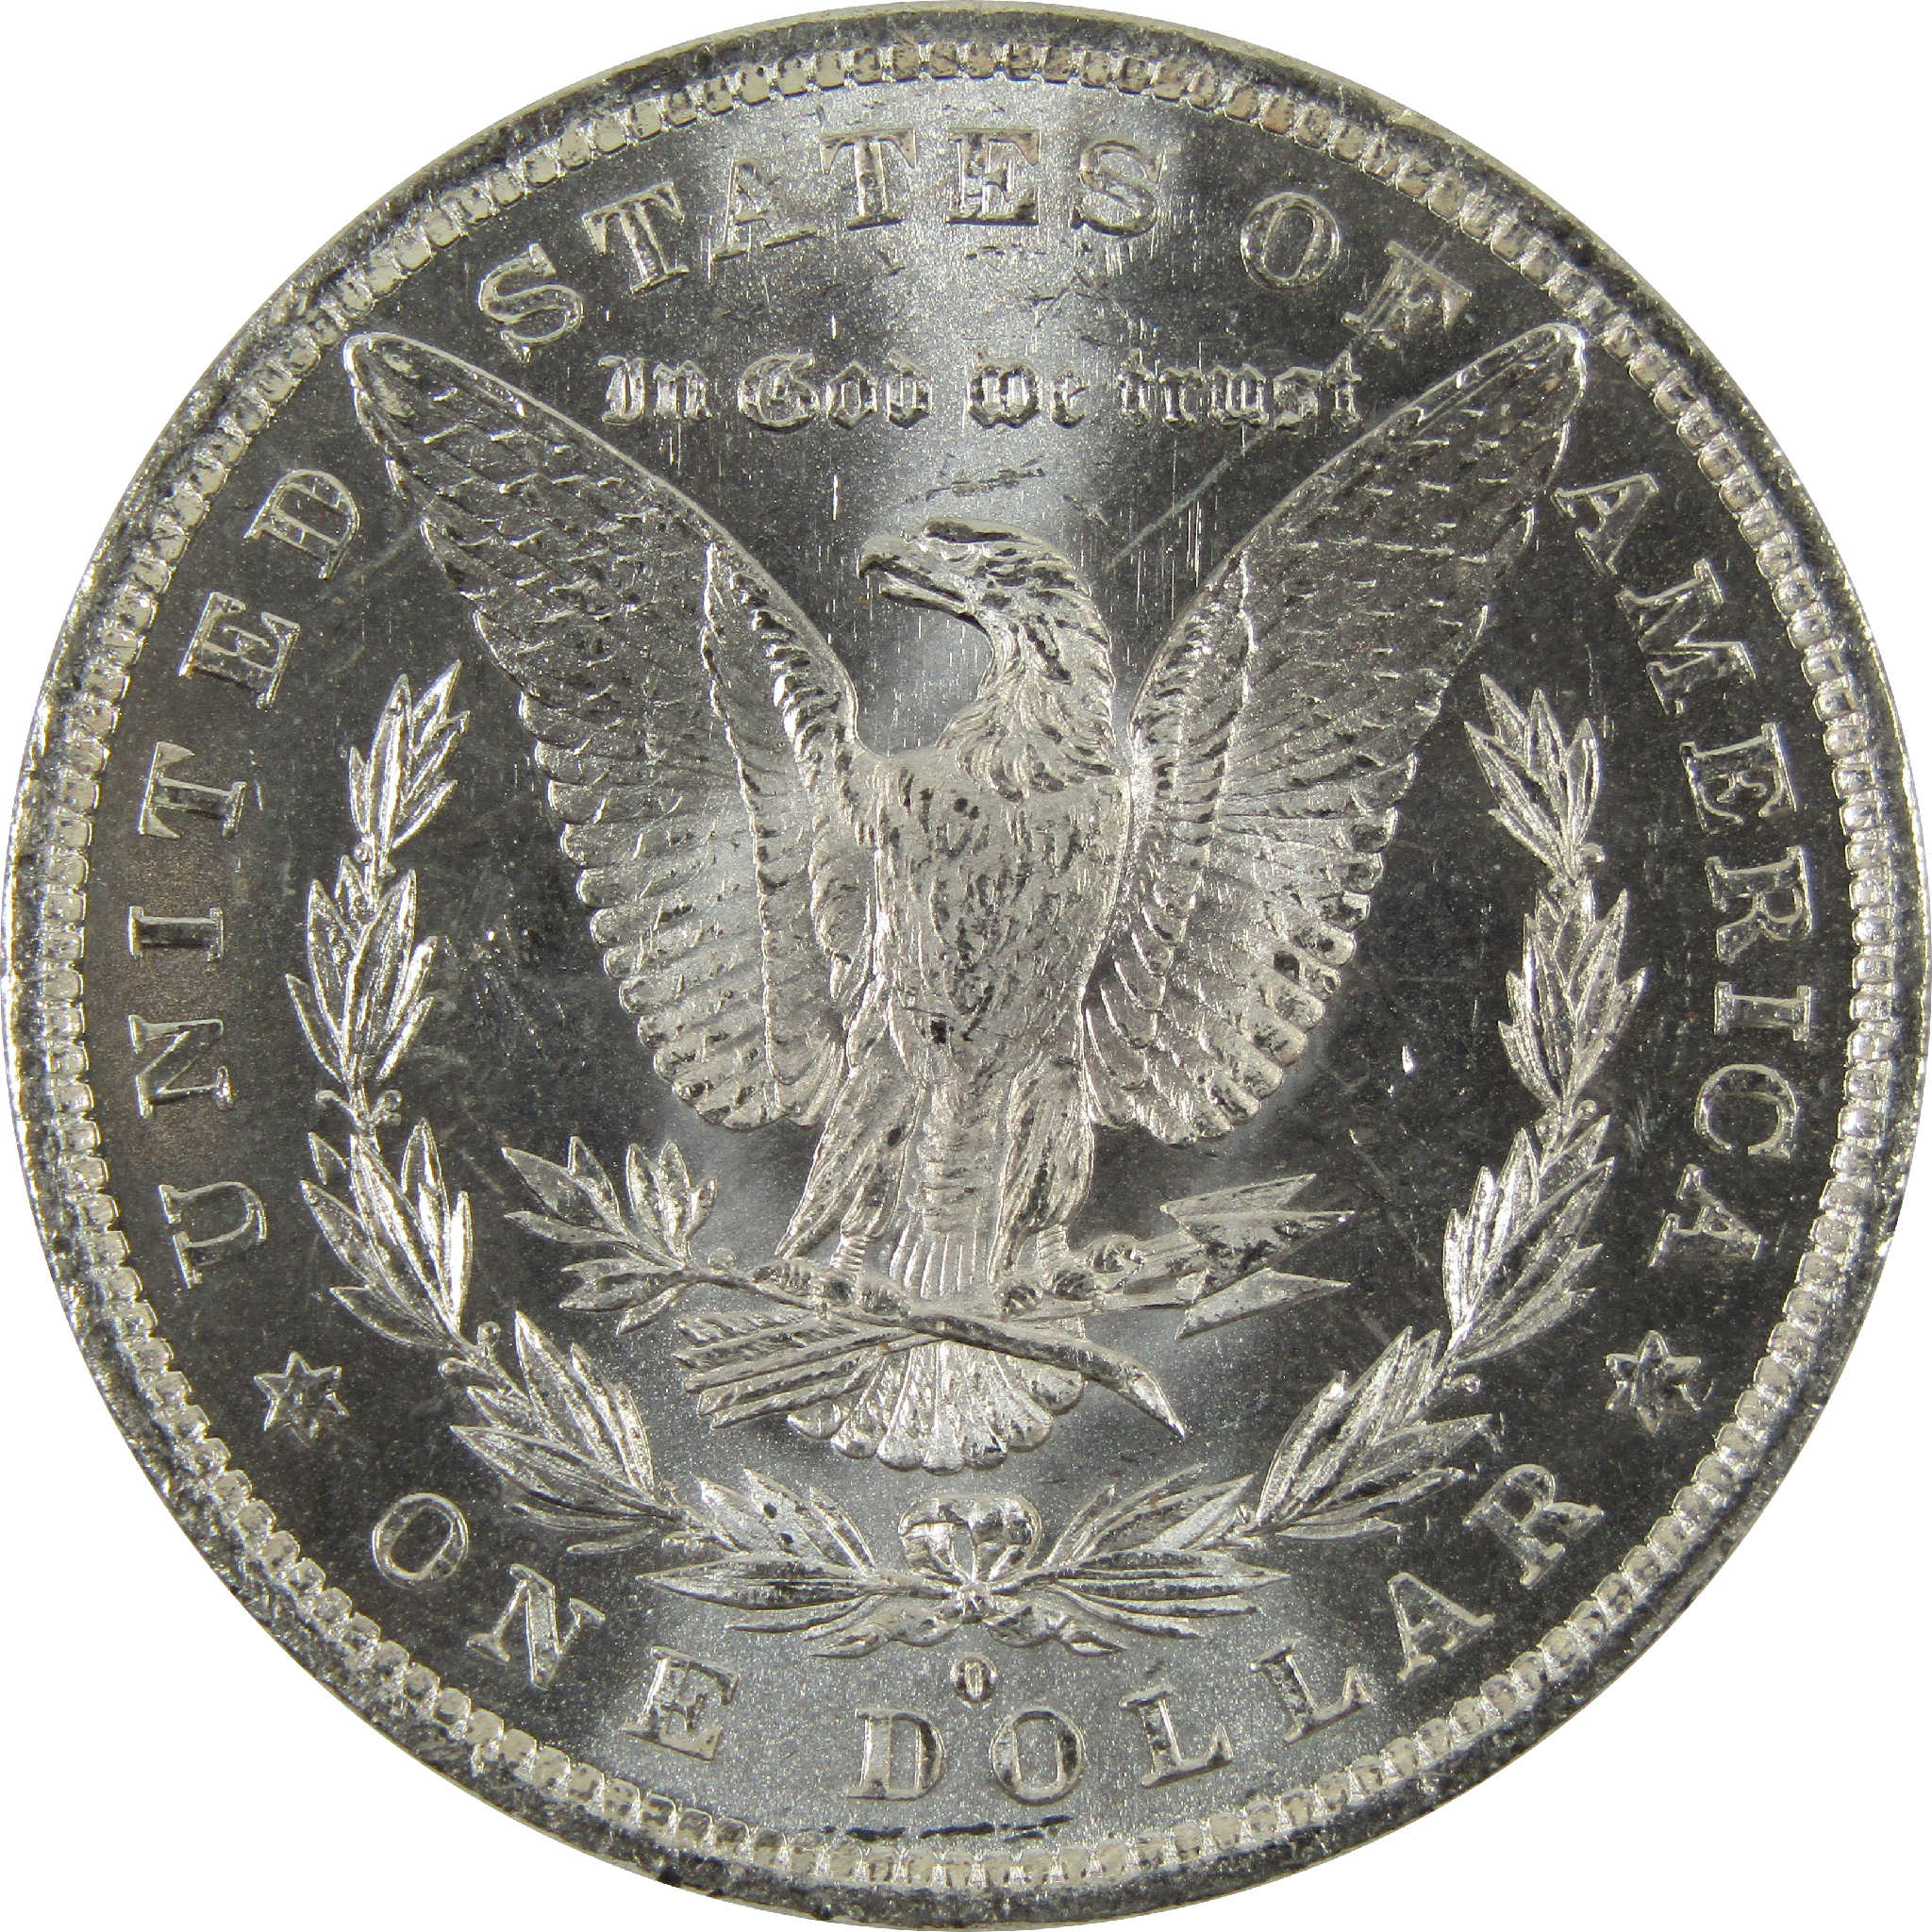 1882 O Morgan Dollar BU Uncirculated 90% Silver $1 Coin SKU:I8905 - Morgan coin - Morgan silver dollar - Morgan silver dollar for sale - Profile Coins &amp; Collectibles